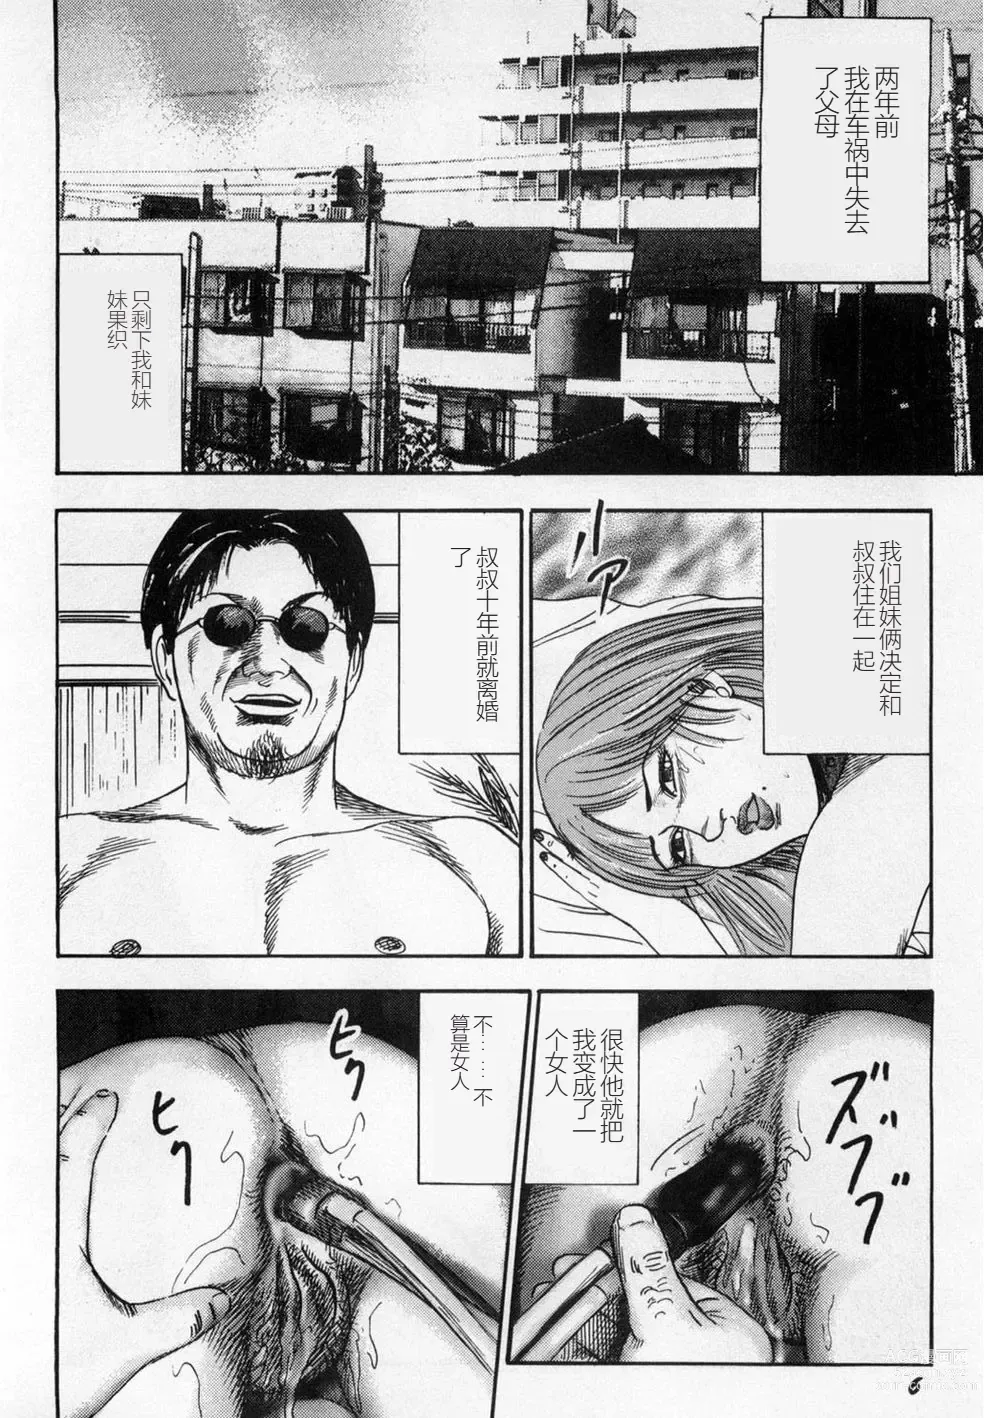 Page 7 of manga Injuu Shimai